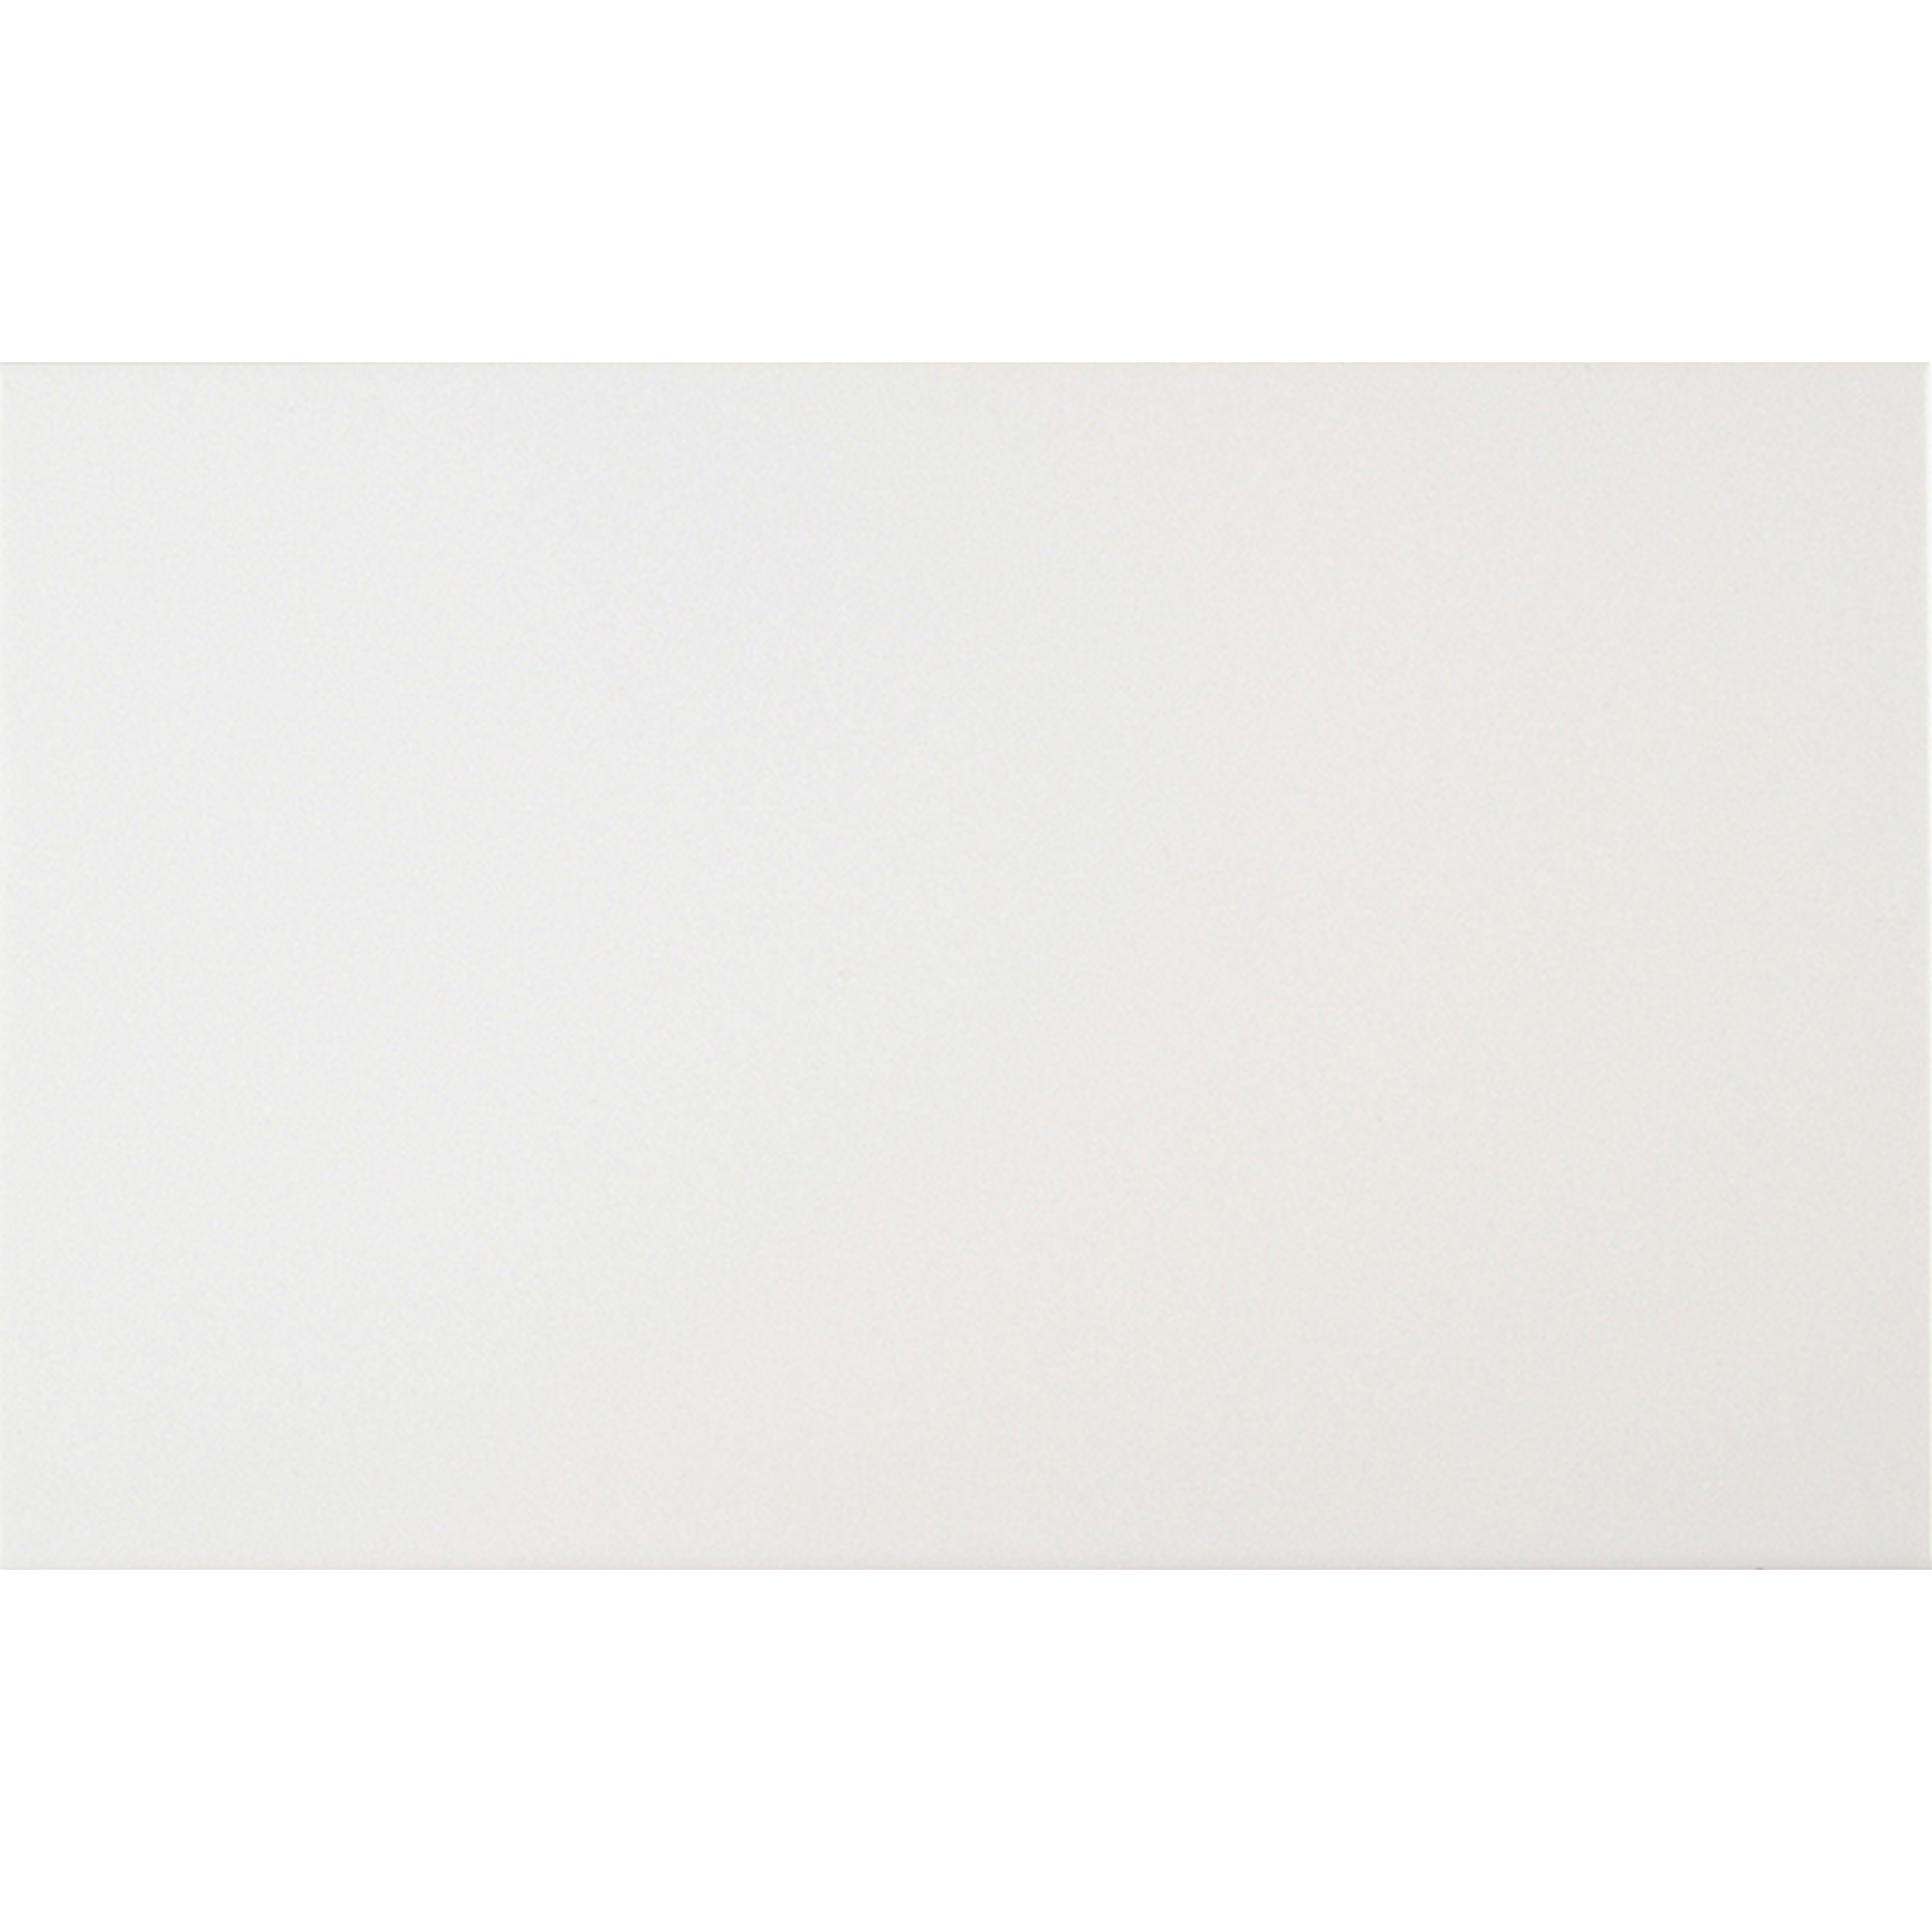 Wandfliese 'Arktis' Steingut weiß glänzend 25 x 40 cm + product picture